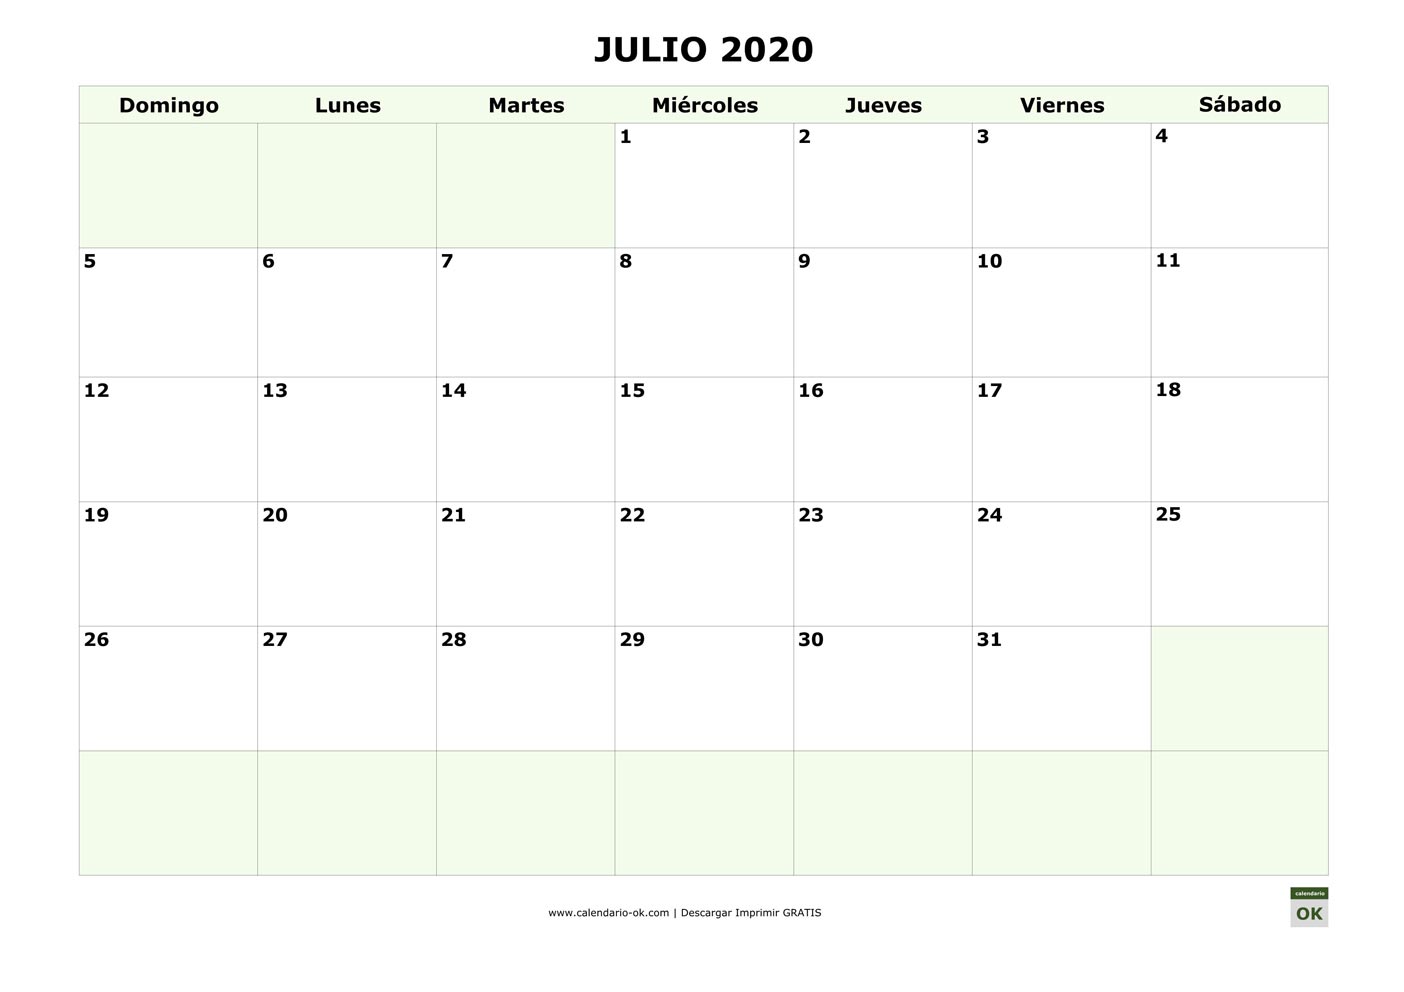 JULIO 2020 empieza por DOMINGO